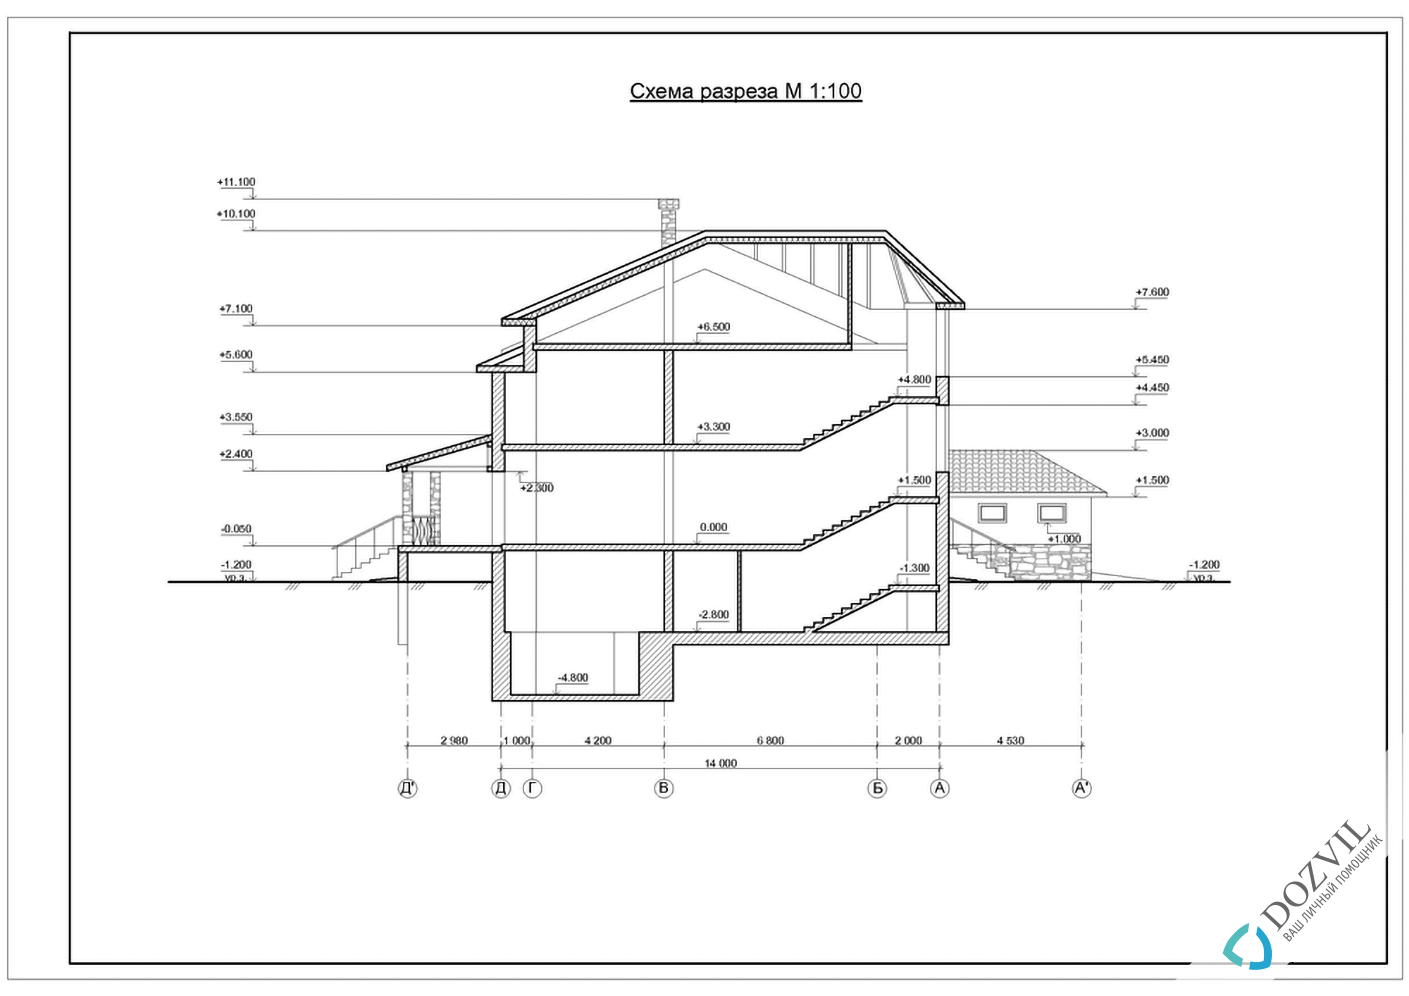 Оформлення гаража> Гараж на ділянці поруч з житловим або садовим будинком > 2 етап - Розробка ескізу намірів будівництва